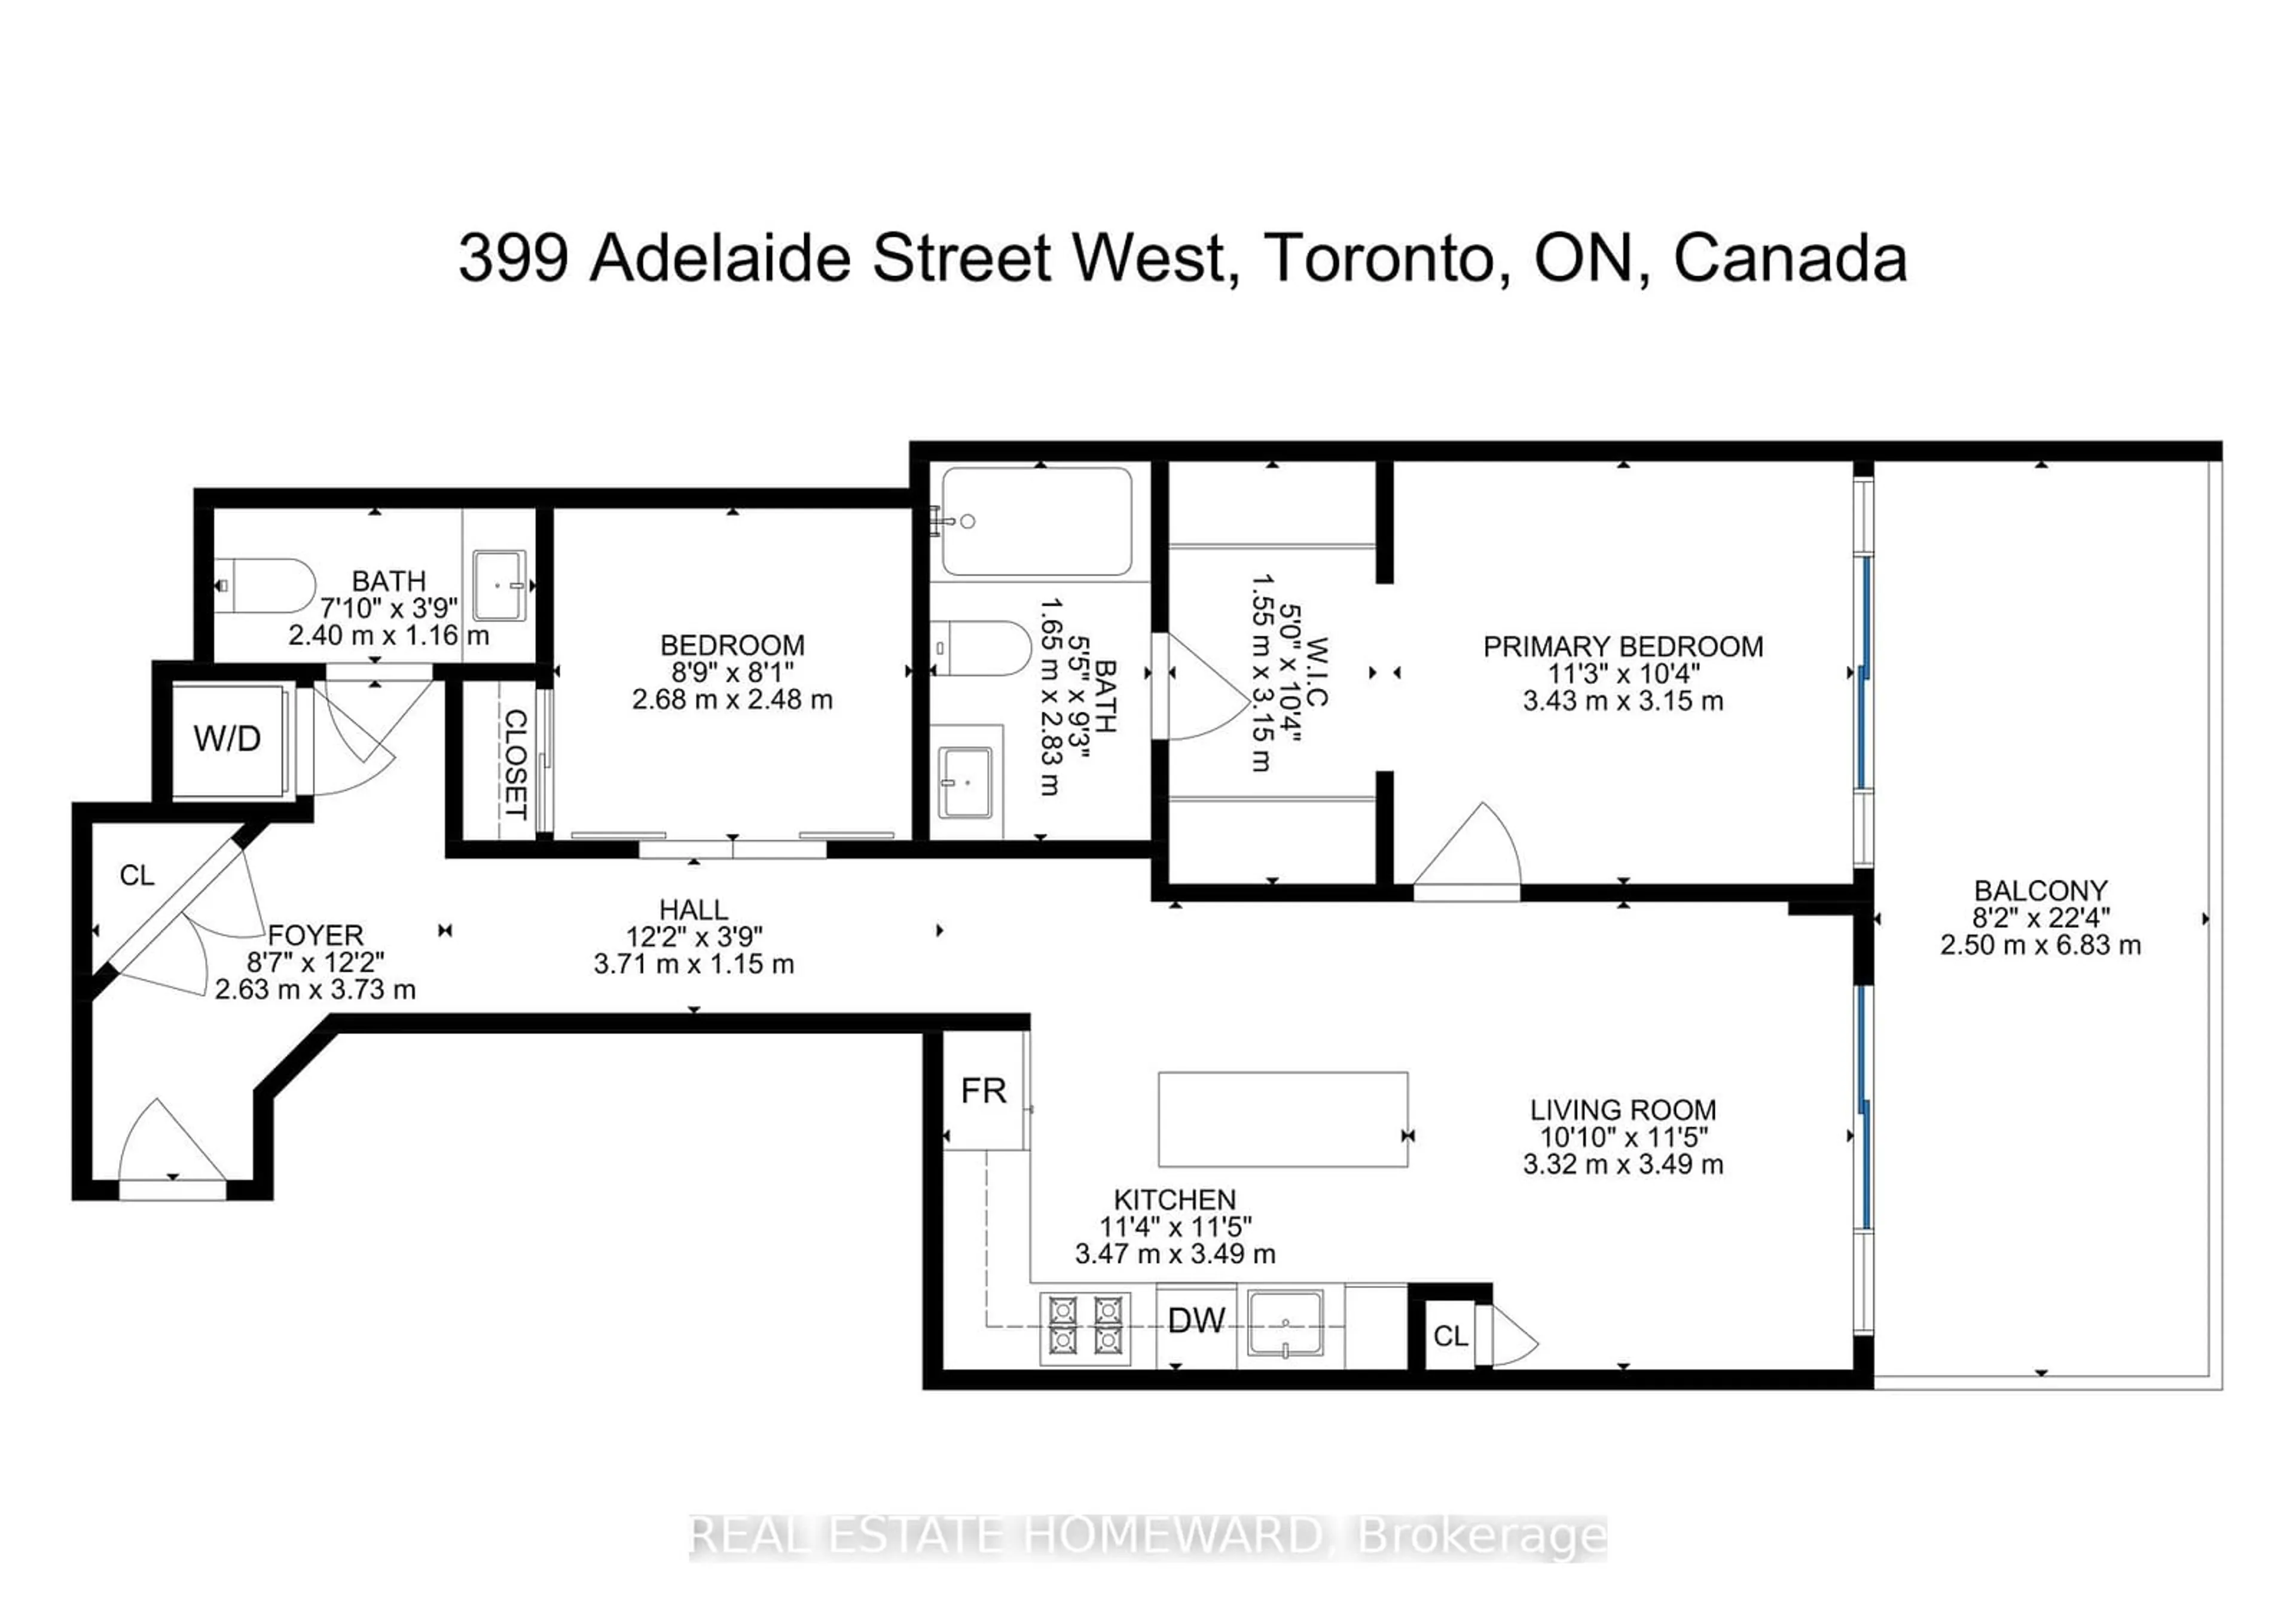 Floor plan for 399 Adelaide St #915, Toronto Ontario M5V 1S1